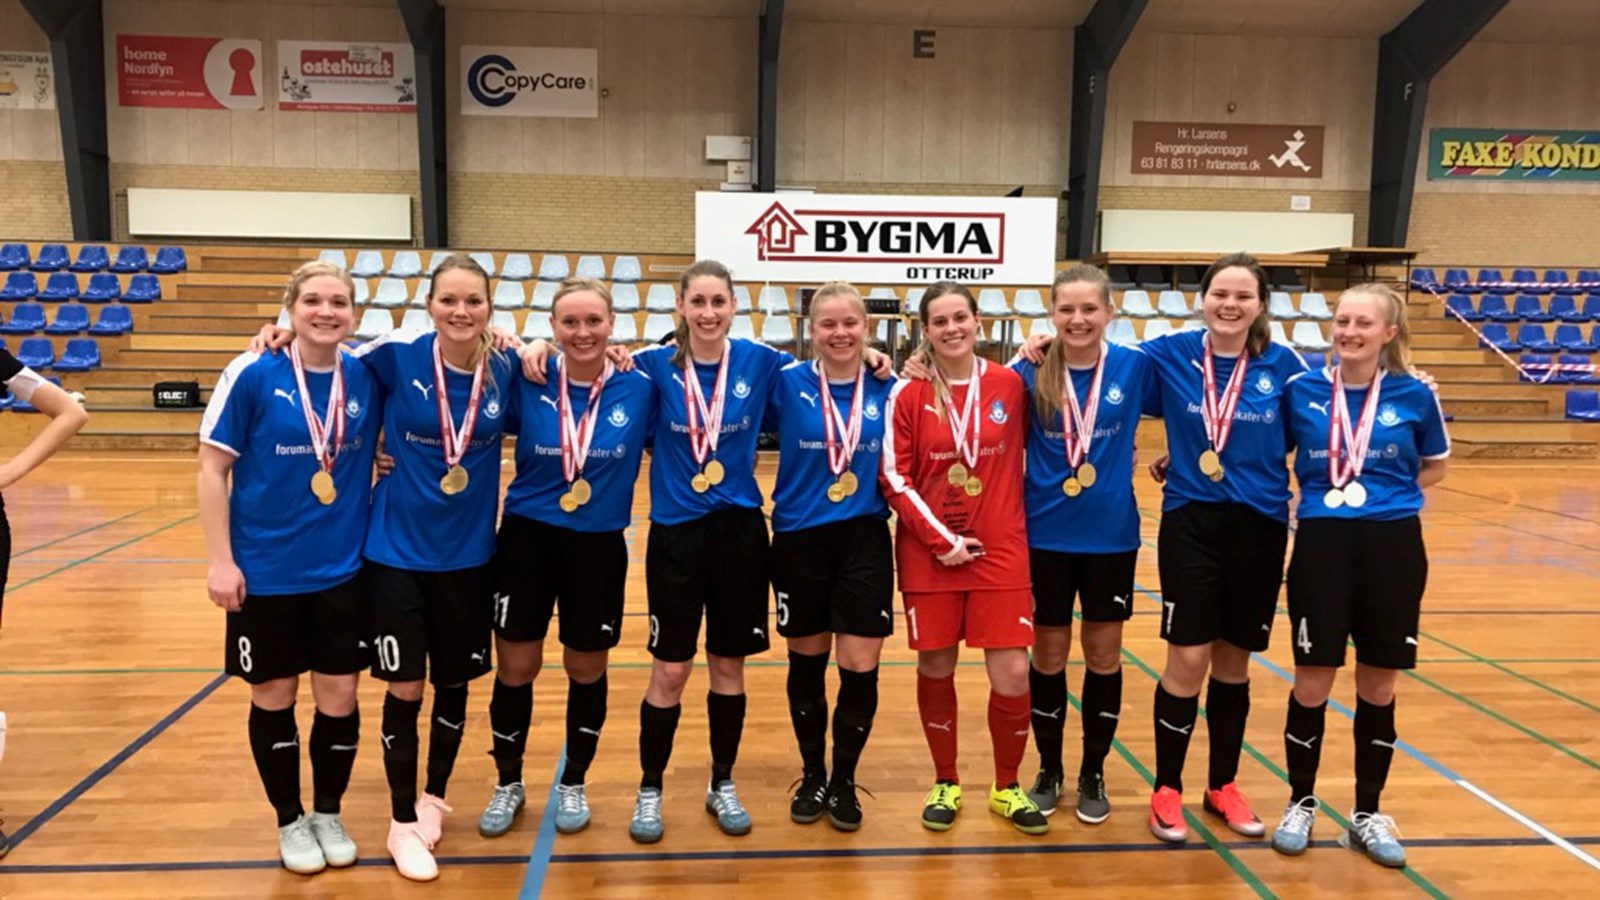 Sjællandske klubber vandt guld ved futsal Final 4